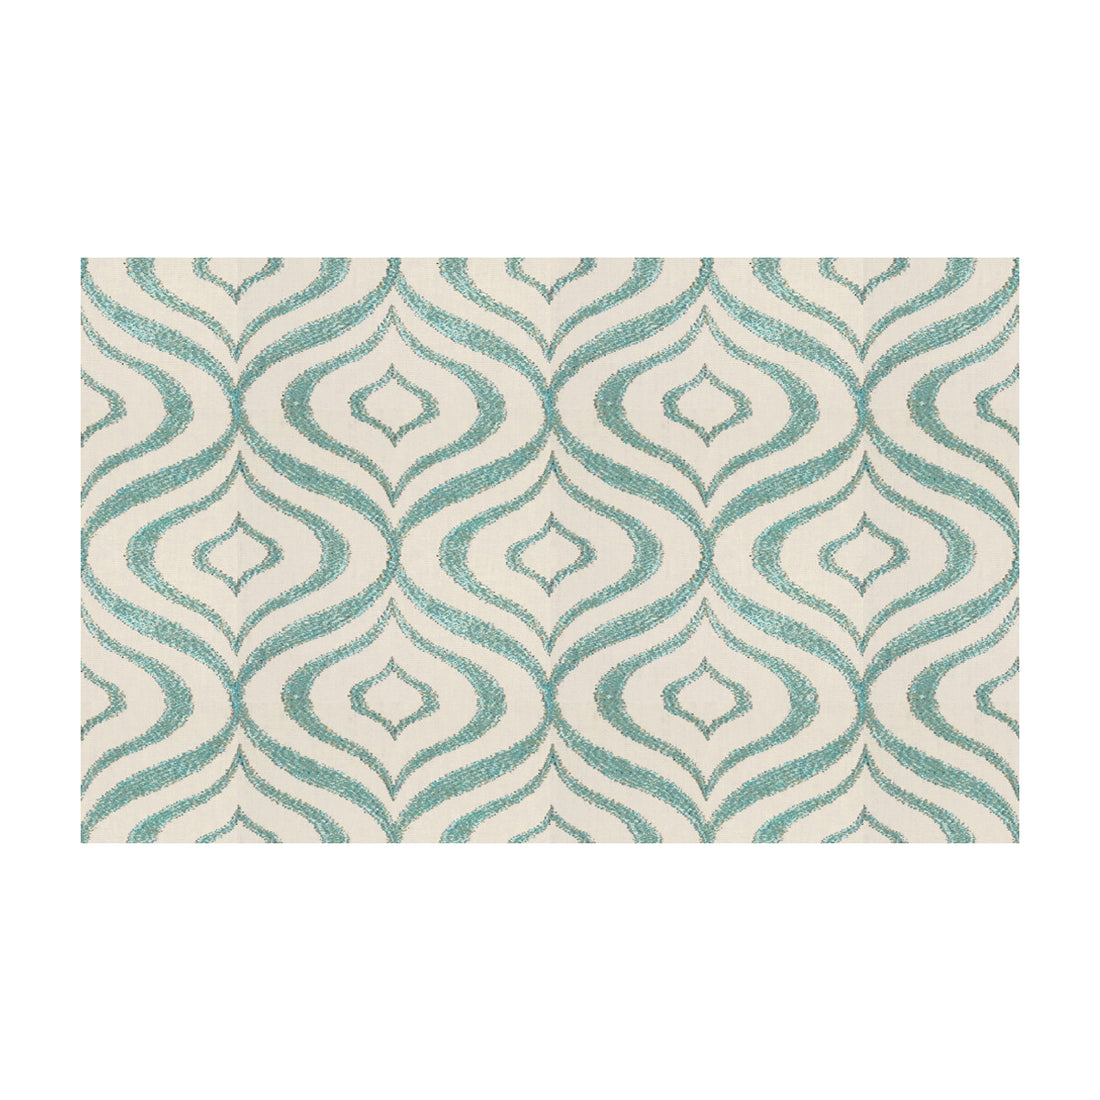 Kravet Design fabric in 33282-13 color - pattern 33282.13.0 - by Kravet Design in the Kravet Colors collection